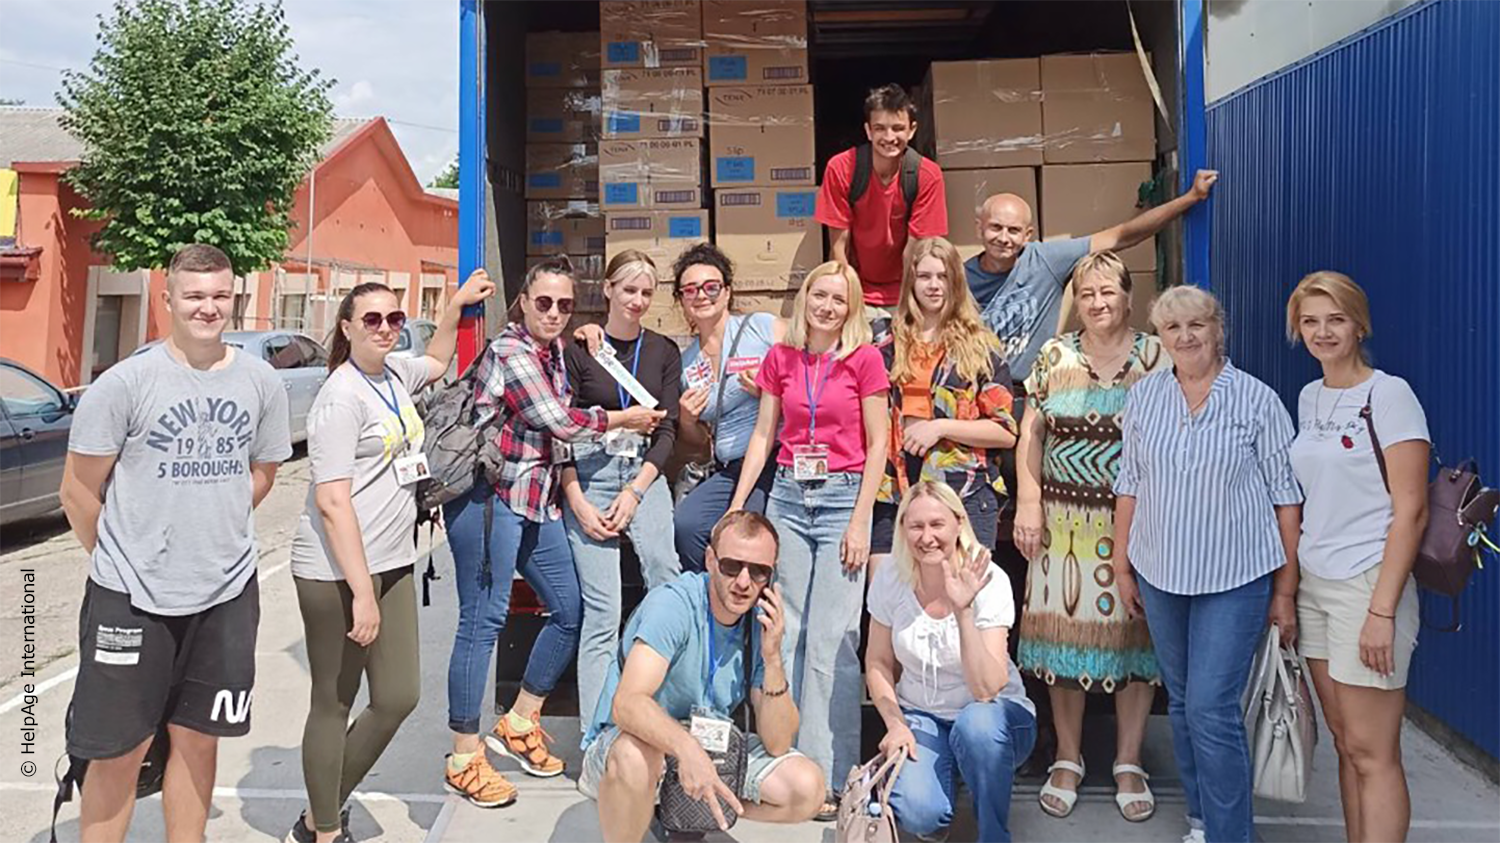  _755_https://www.helpage.org/silo/images/ukraine-volunteersgroup-2_1500x843.png